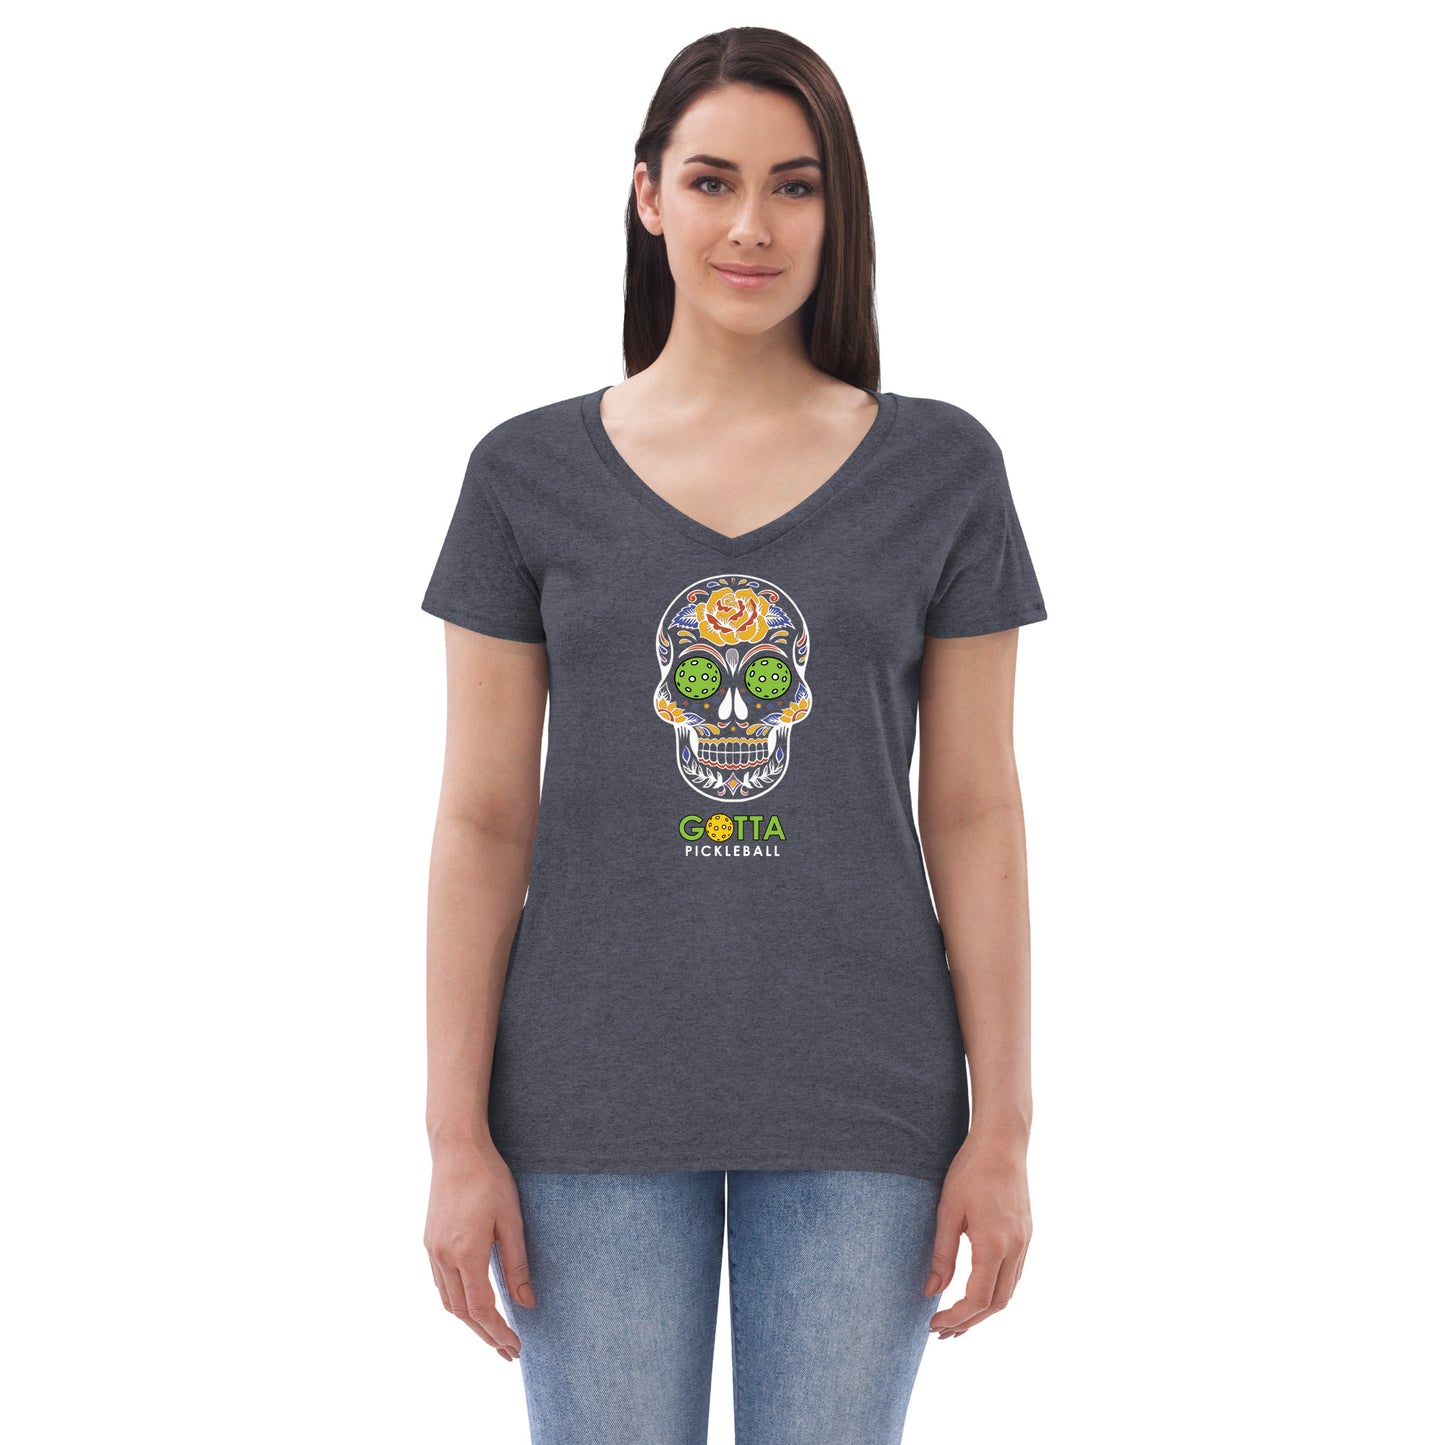 Women's T-Shirt V-Neck: Day of the Dead Skull PIckleball eyes (more colors)